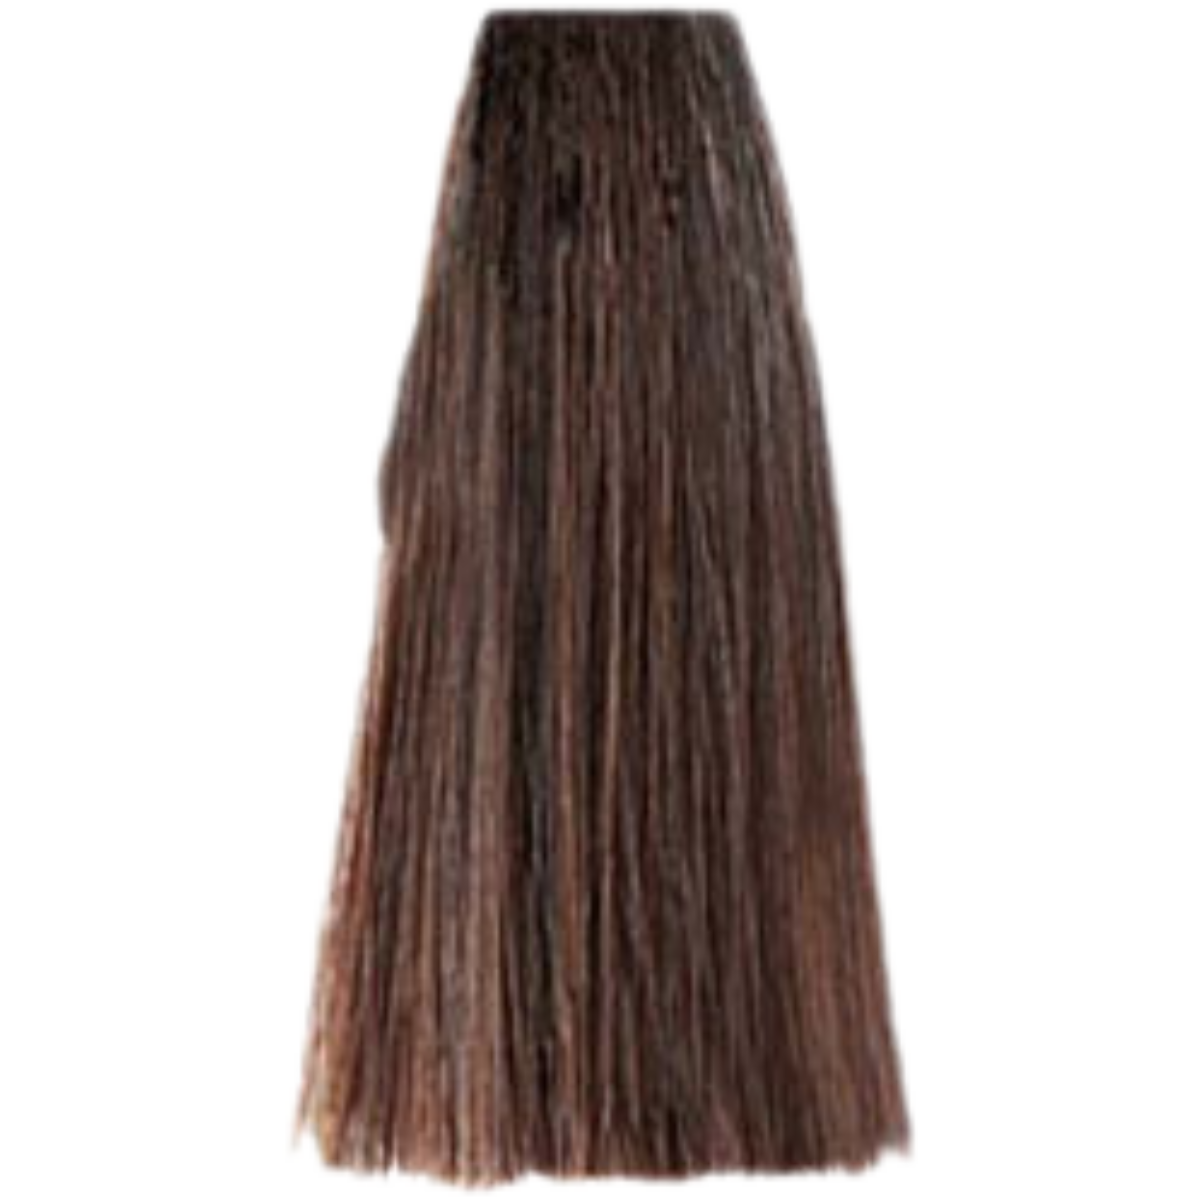 צבע שיער 6.03 WARM DARK BLONDE פארמויטה FarmaVita צבע לשיער 100 גרם